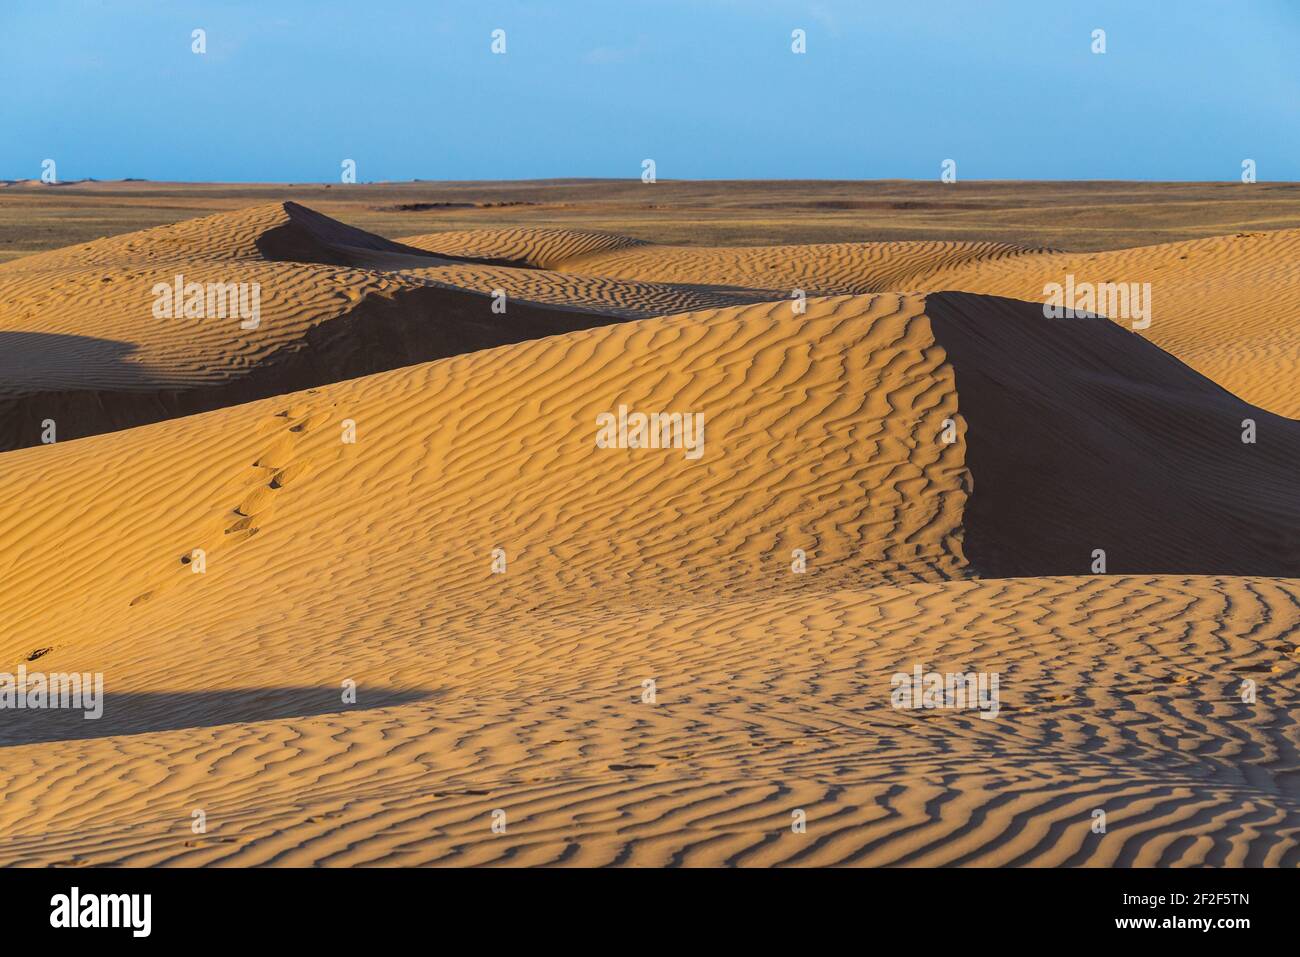 Riesige Dünen der Wüste. Schöne Strukturen von sandigen barkhan oder Sand-Düne. Wellen durch Wind auf der Sandoberfläche. Stockfoto